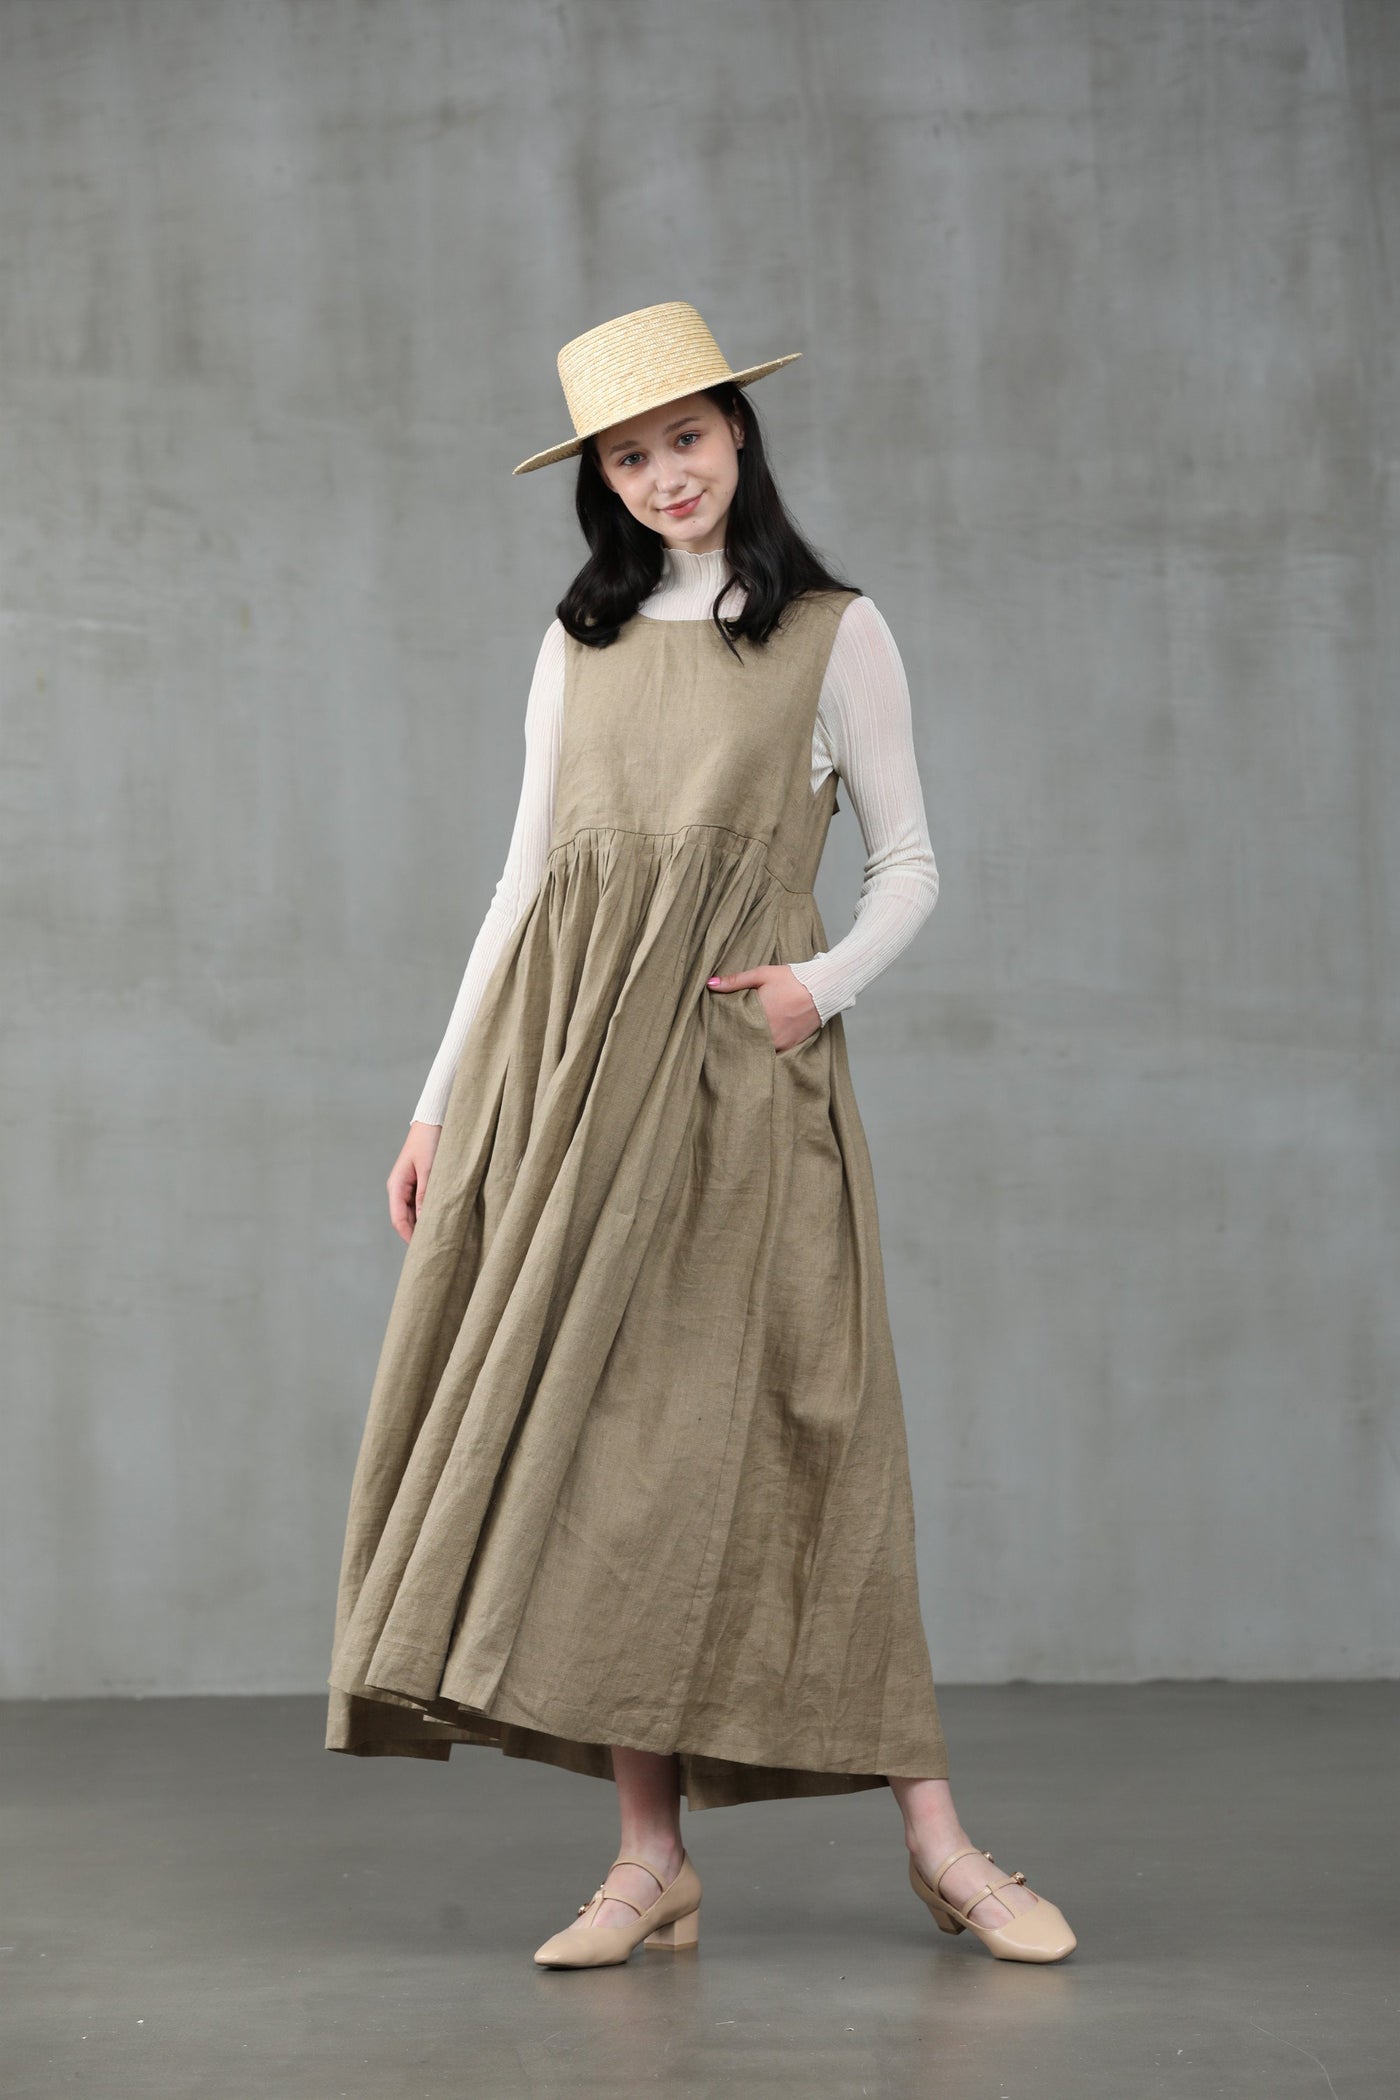 Ear of wheat 33 | Apron linen dress